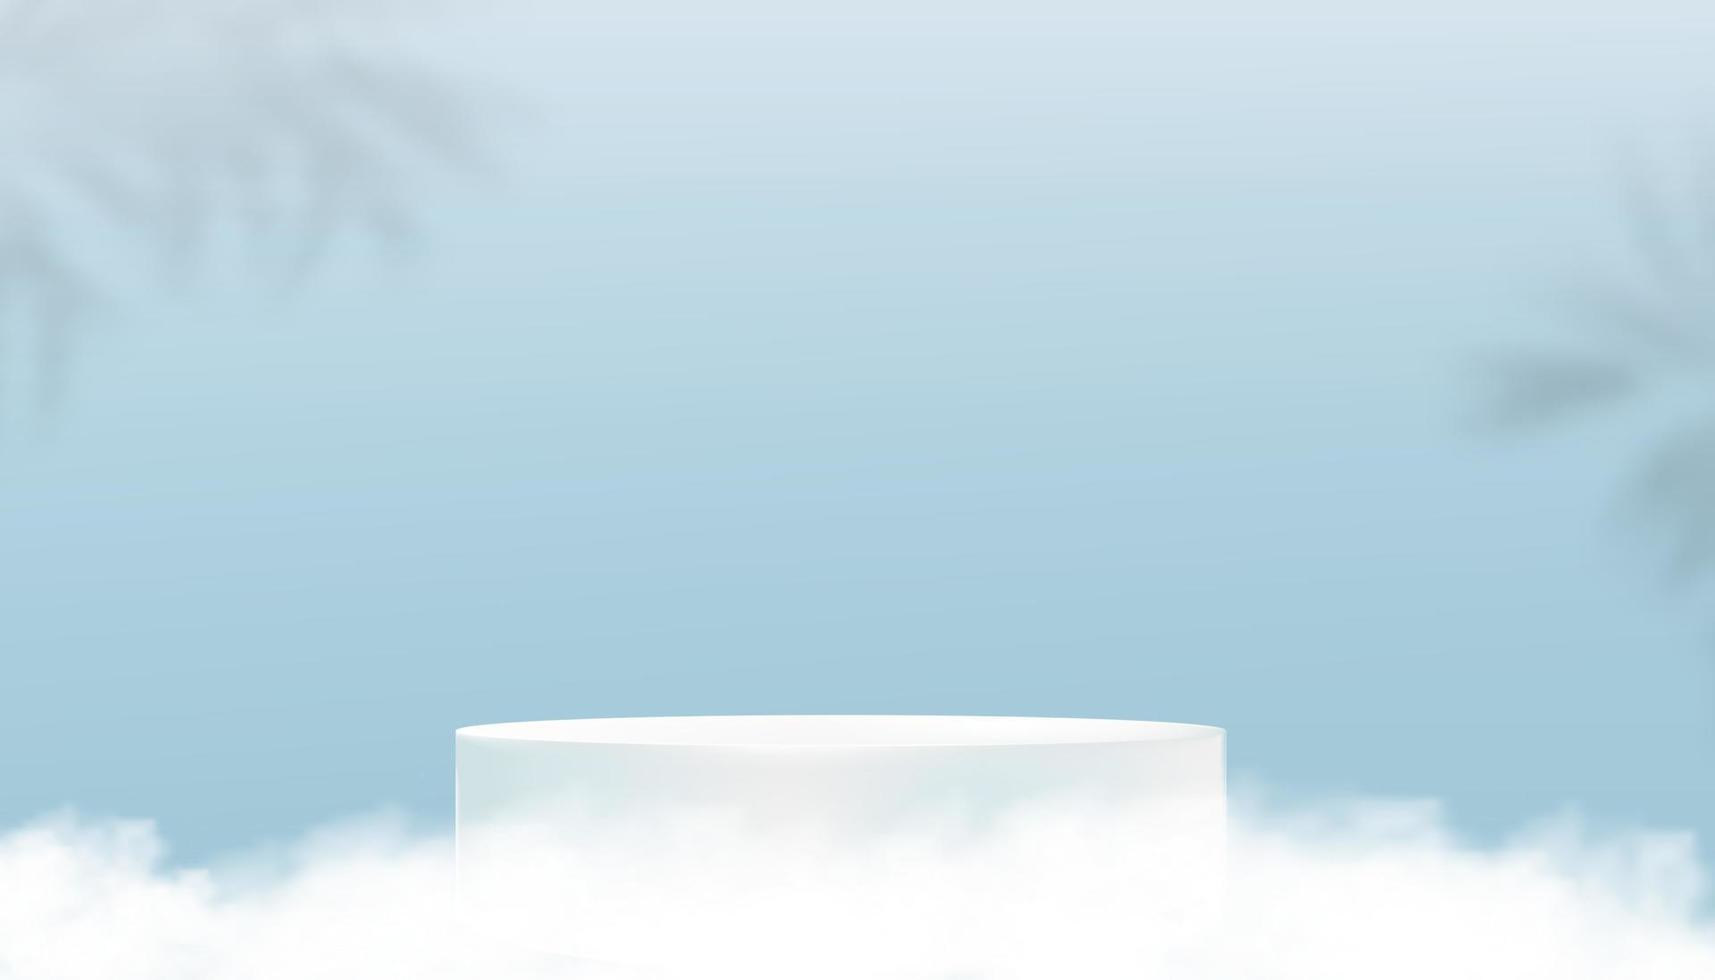 toile de fond de la salle de studio avec affichage du podium 3d, feuille de palmier, nuage, ciel bleu sur fond de mur, maquette de cylindre de bannière d'illustration vectorielle, conception minimale pour le printemps, présentation du produit d'été vecteur